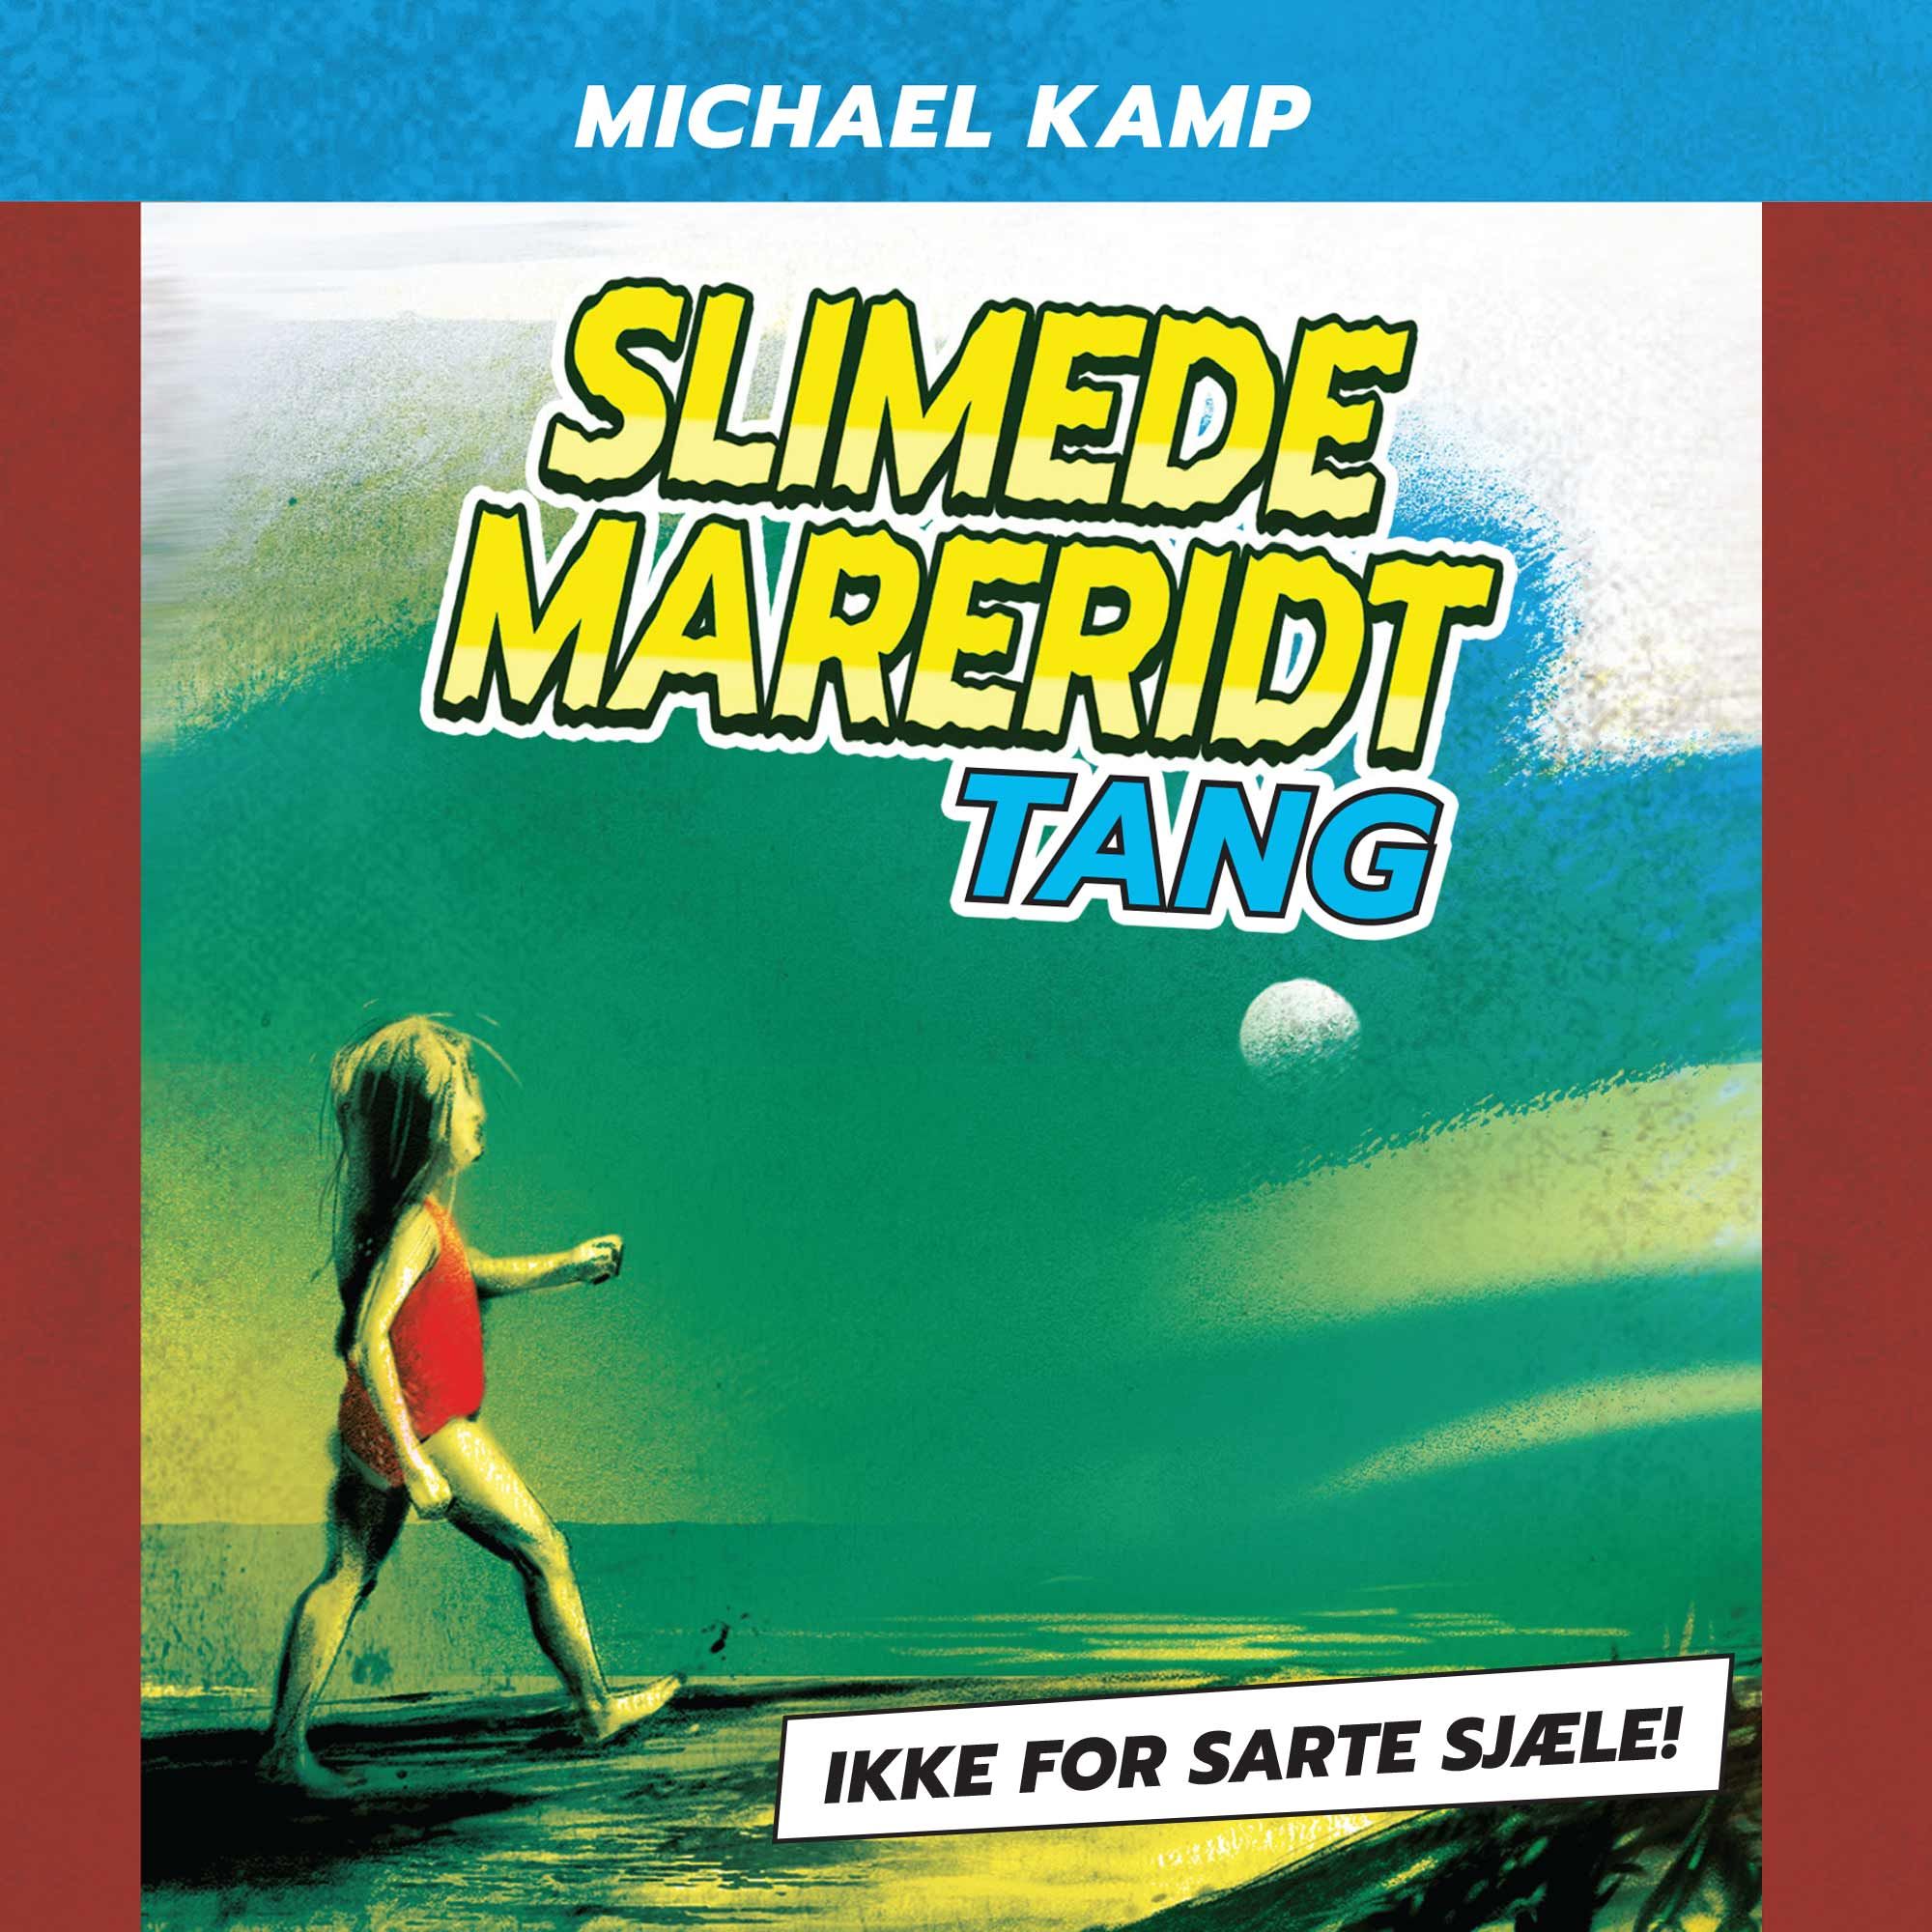 Slimede mareridt #1: Tang, lydbog af Michael Kamp